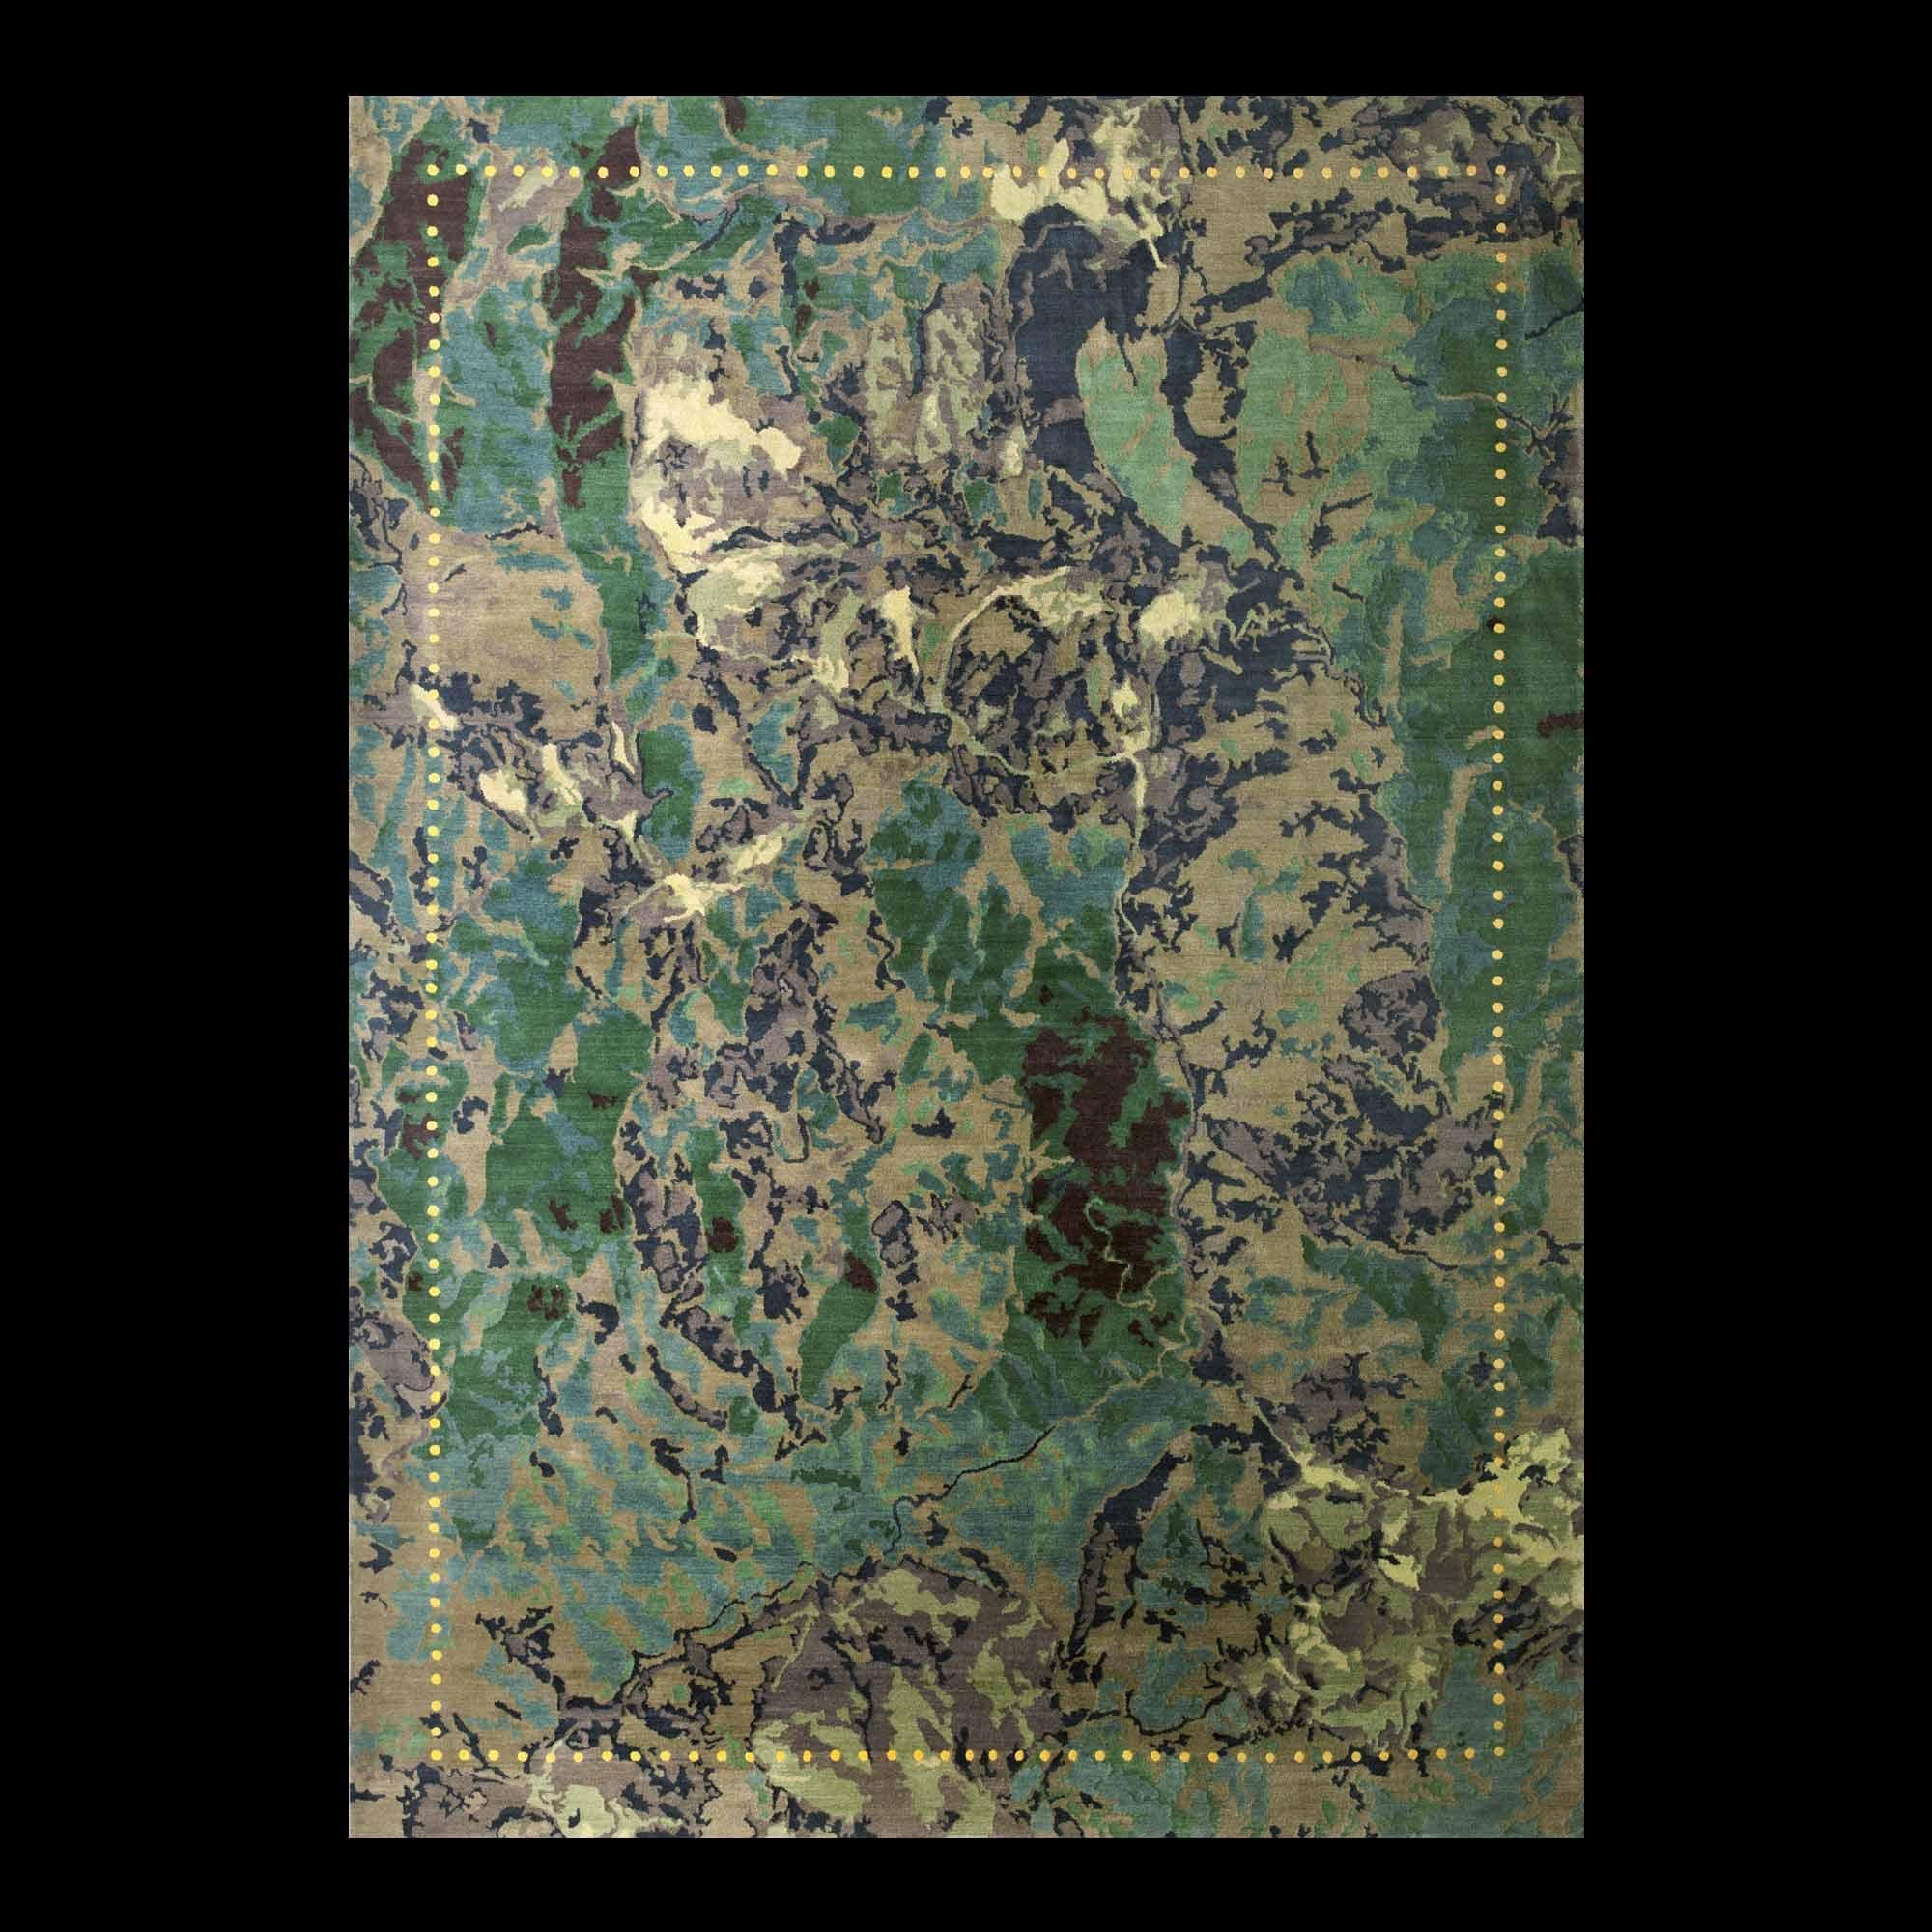 Tapis en laine The Ground N°1 d'Alberto Biagetti pour la collection Post Design/Memphis

Un tapis en laine fabriqué à la main par différents artisans népalais. Il s'agit d'une édition limitée de 12 exemplaires signés et numérotés.

Le tapis